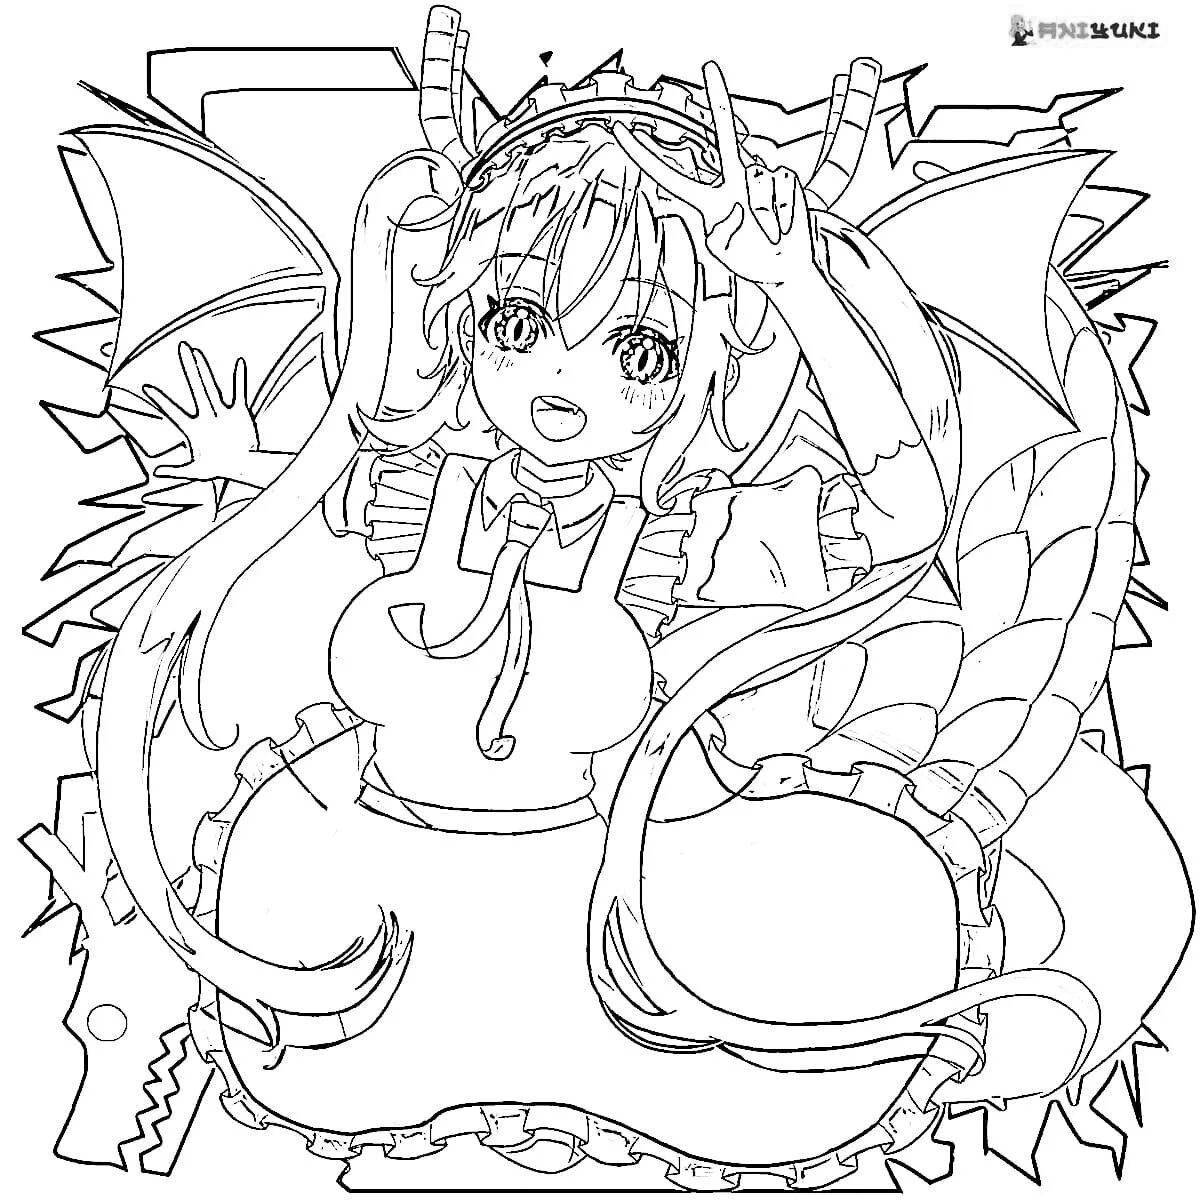 Kobayashi's beautiful anime dragon maid